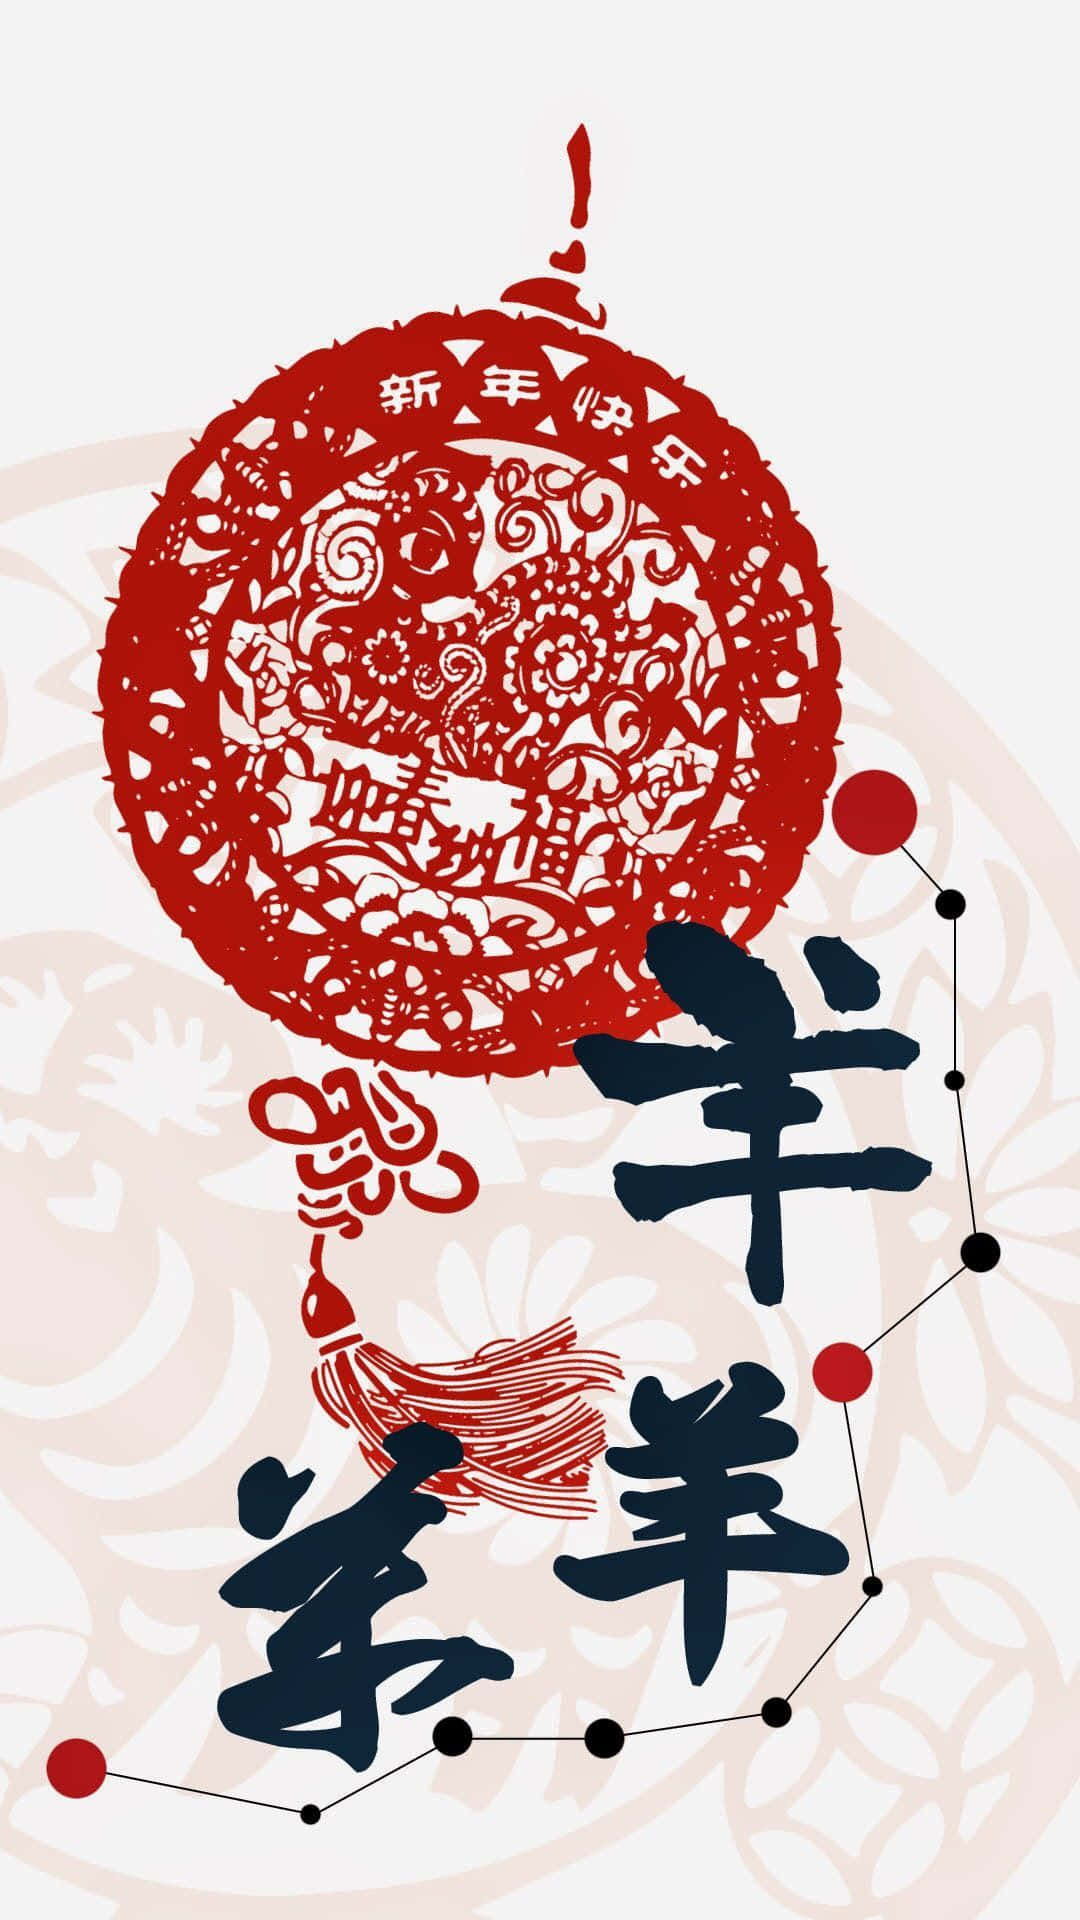 Feiernsie Das Chinesische Neujahr Mit Einem Limitierten Iphone! Wallpaper